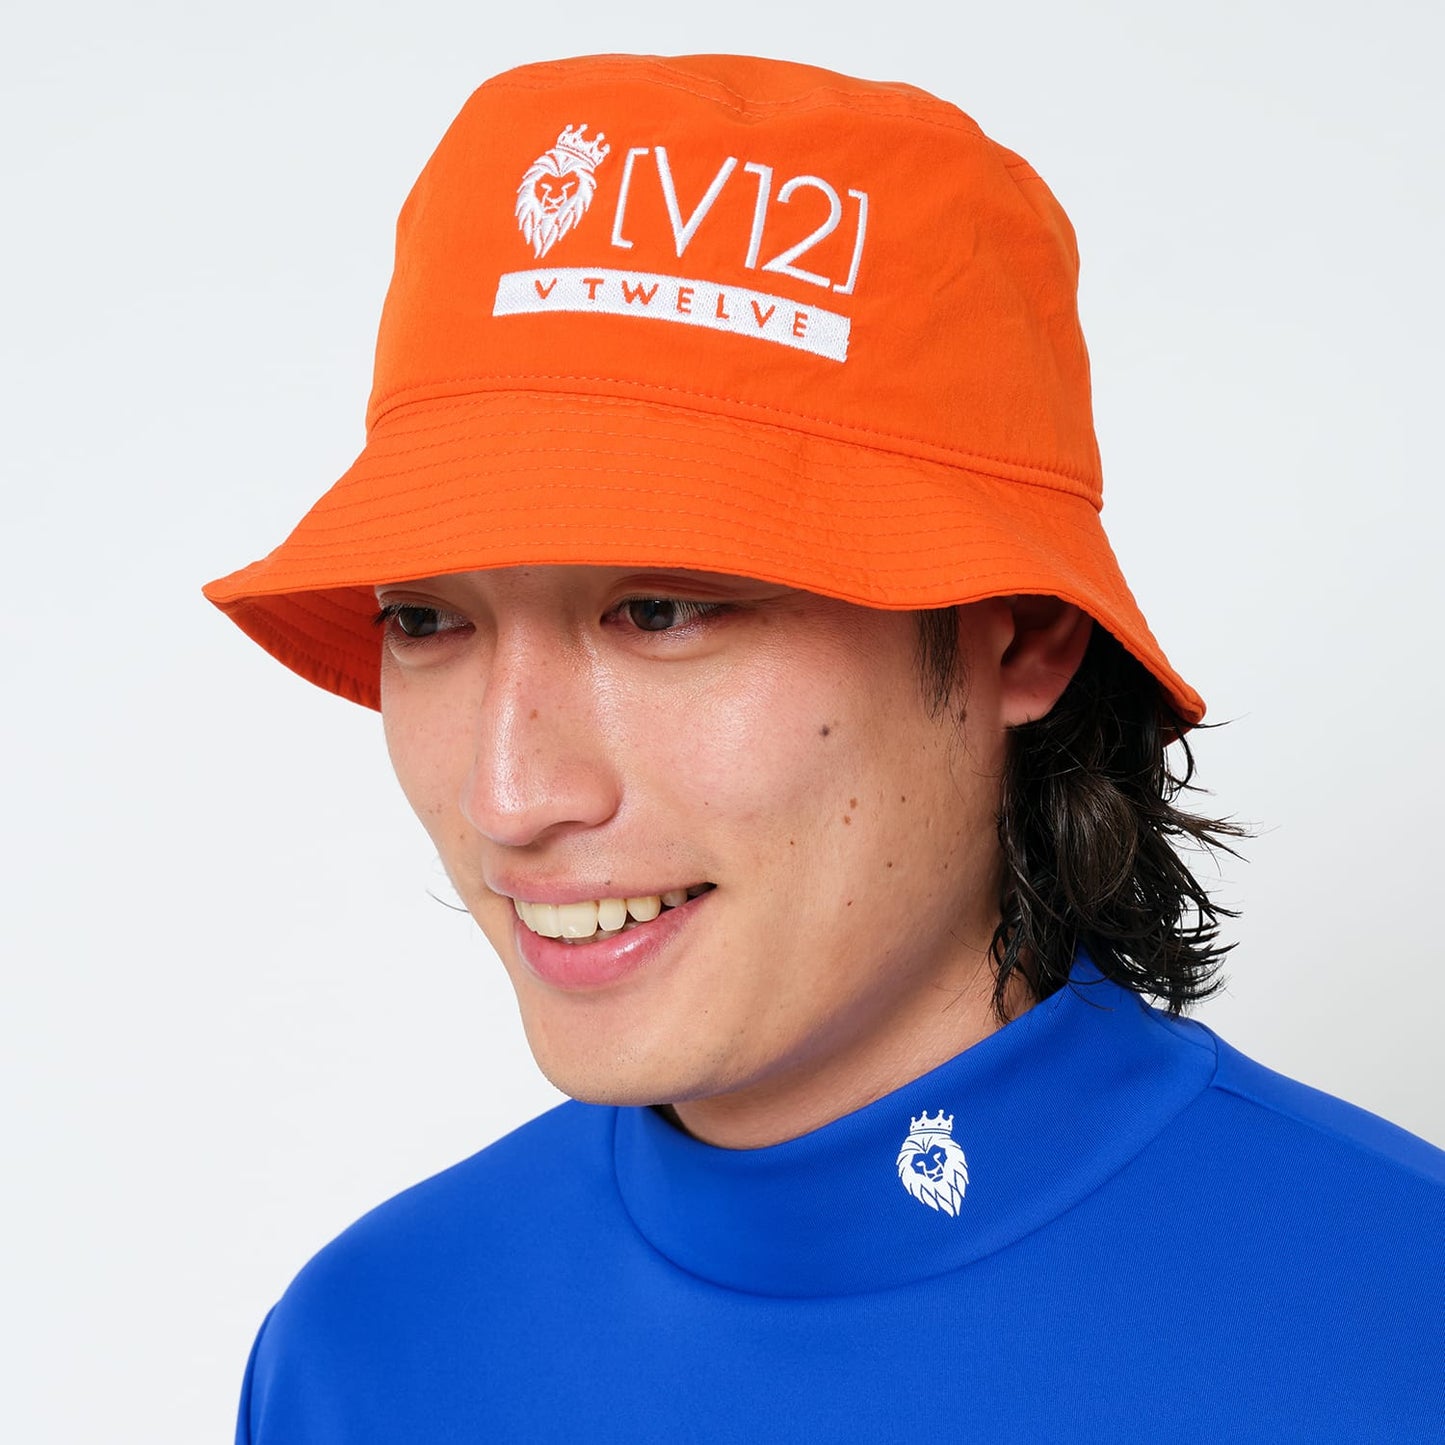 VT BUCKET HAT